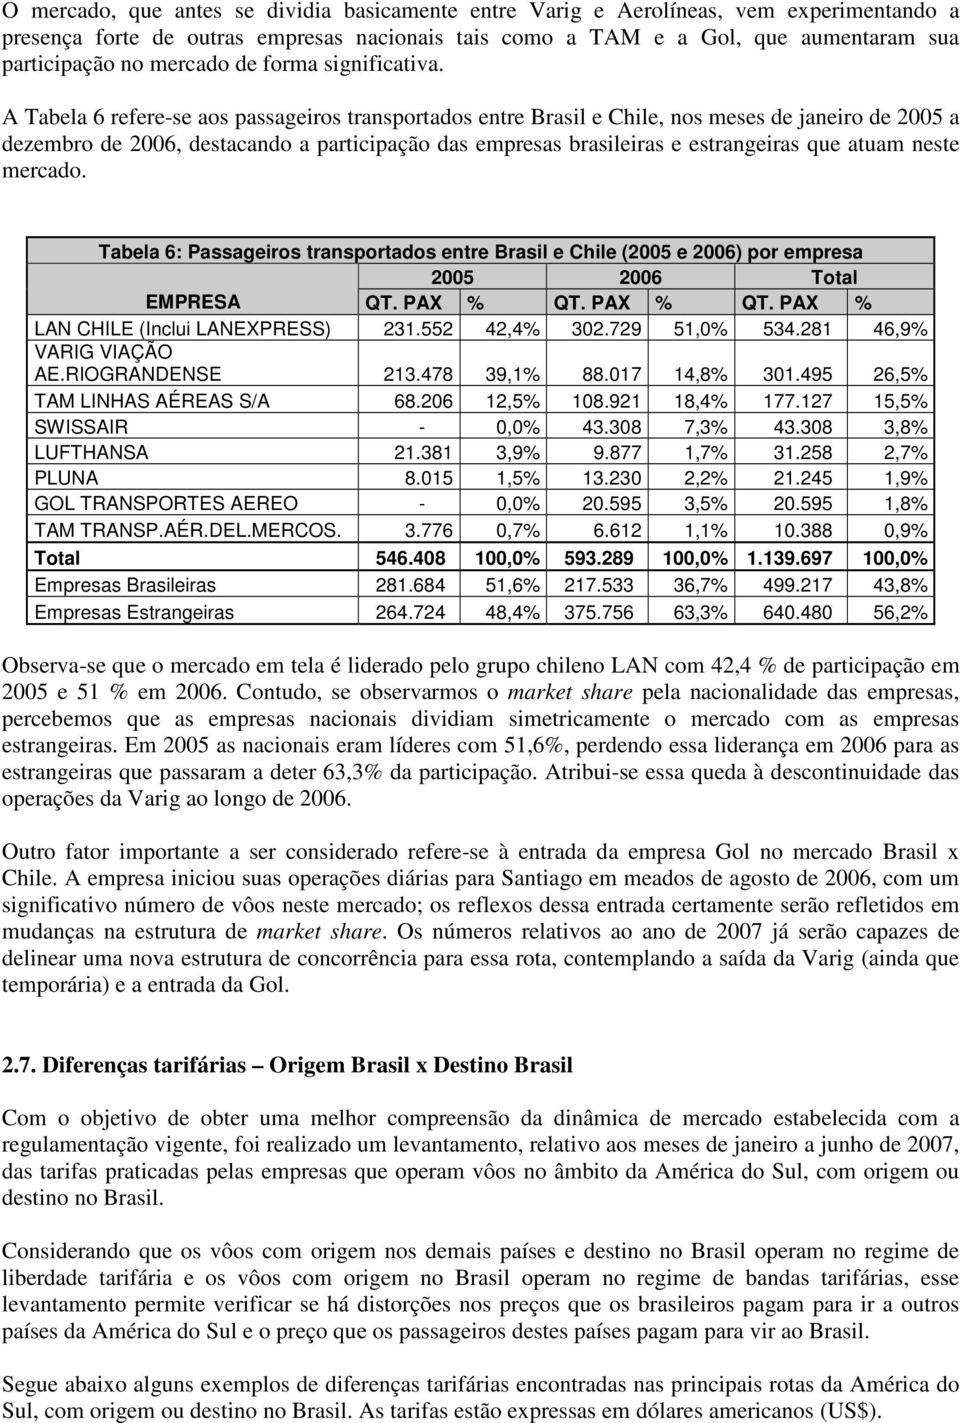 A Tabela 6 refere-se aos passageiros transportados entre Brasil e Chile, nos meses de janeiro de 2005 a dezembro de 2006, destacando a participação das empresas brasileiras e estrangeiras que atuam